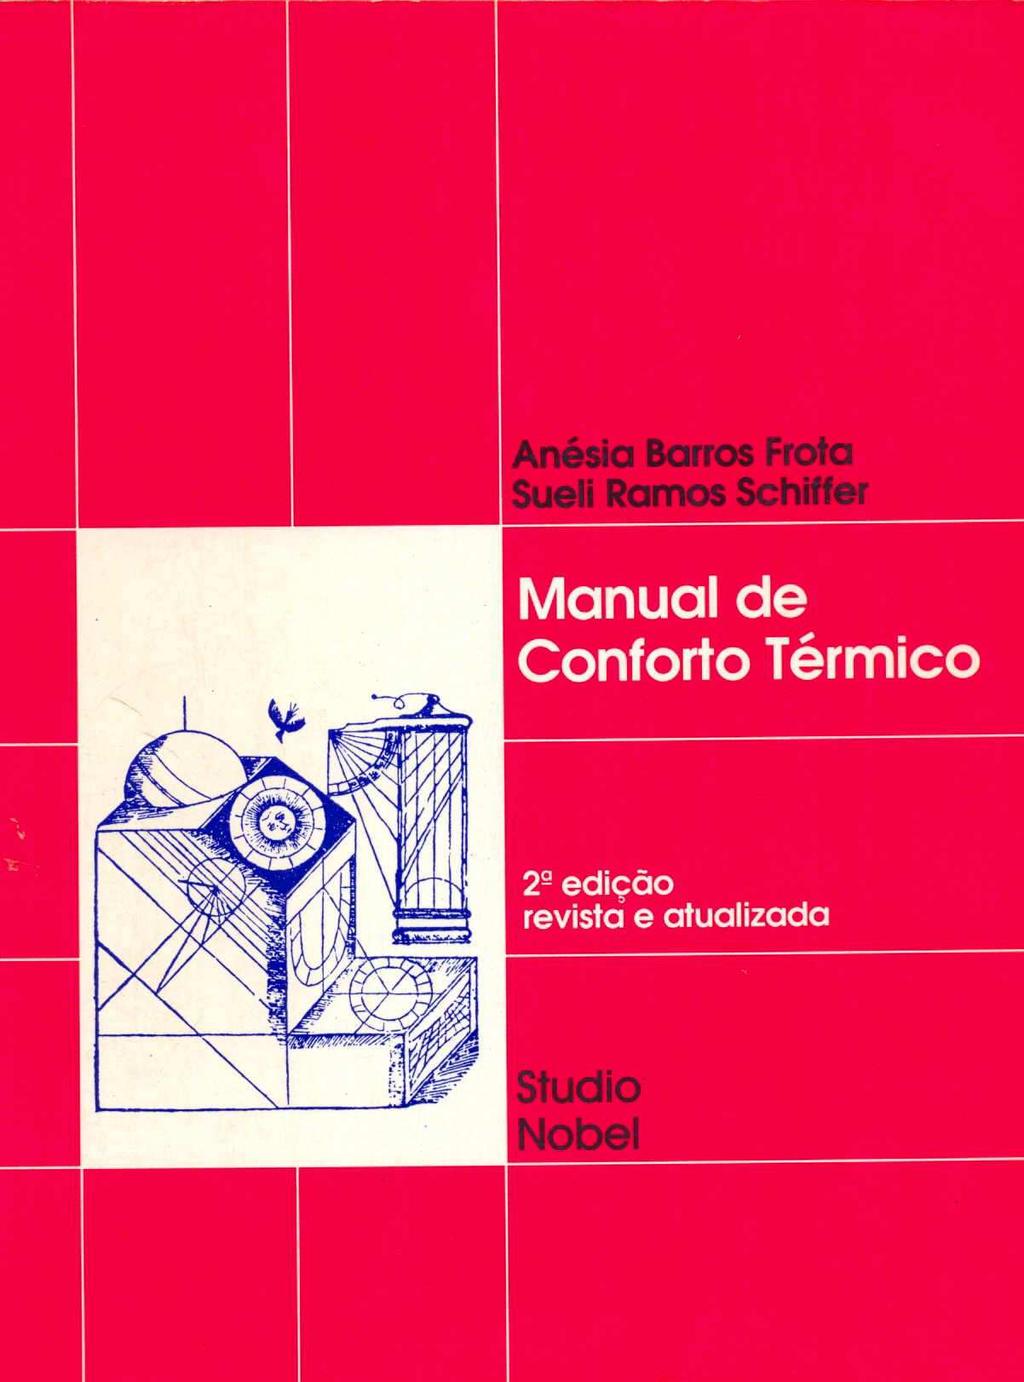 Frota & Schiffer Manual de Conforto Térmico (Studio Nobel, 1995) Cap 1 Exigências humanas quanto ao conforto térmico Cap 2 Trocas térmicas (convecção, radiação, condução, etc) Cap